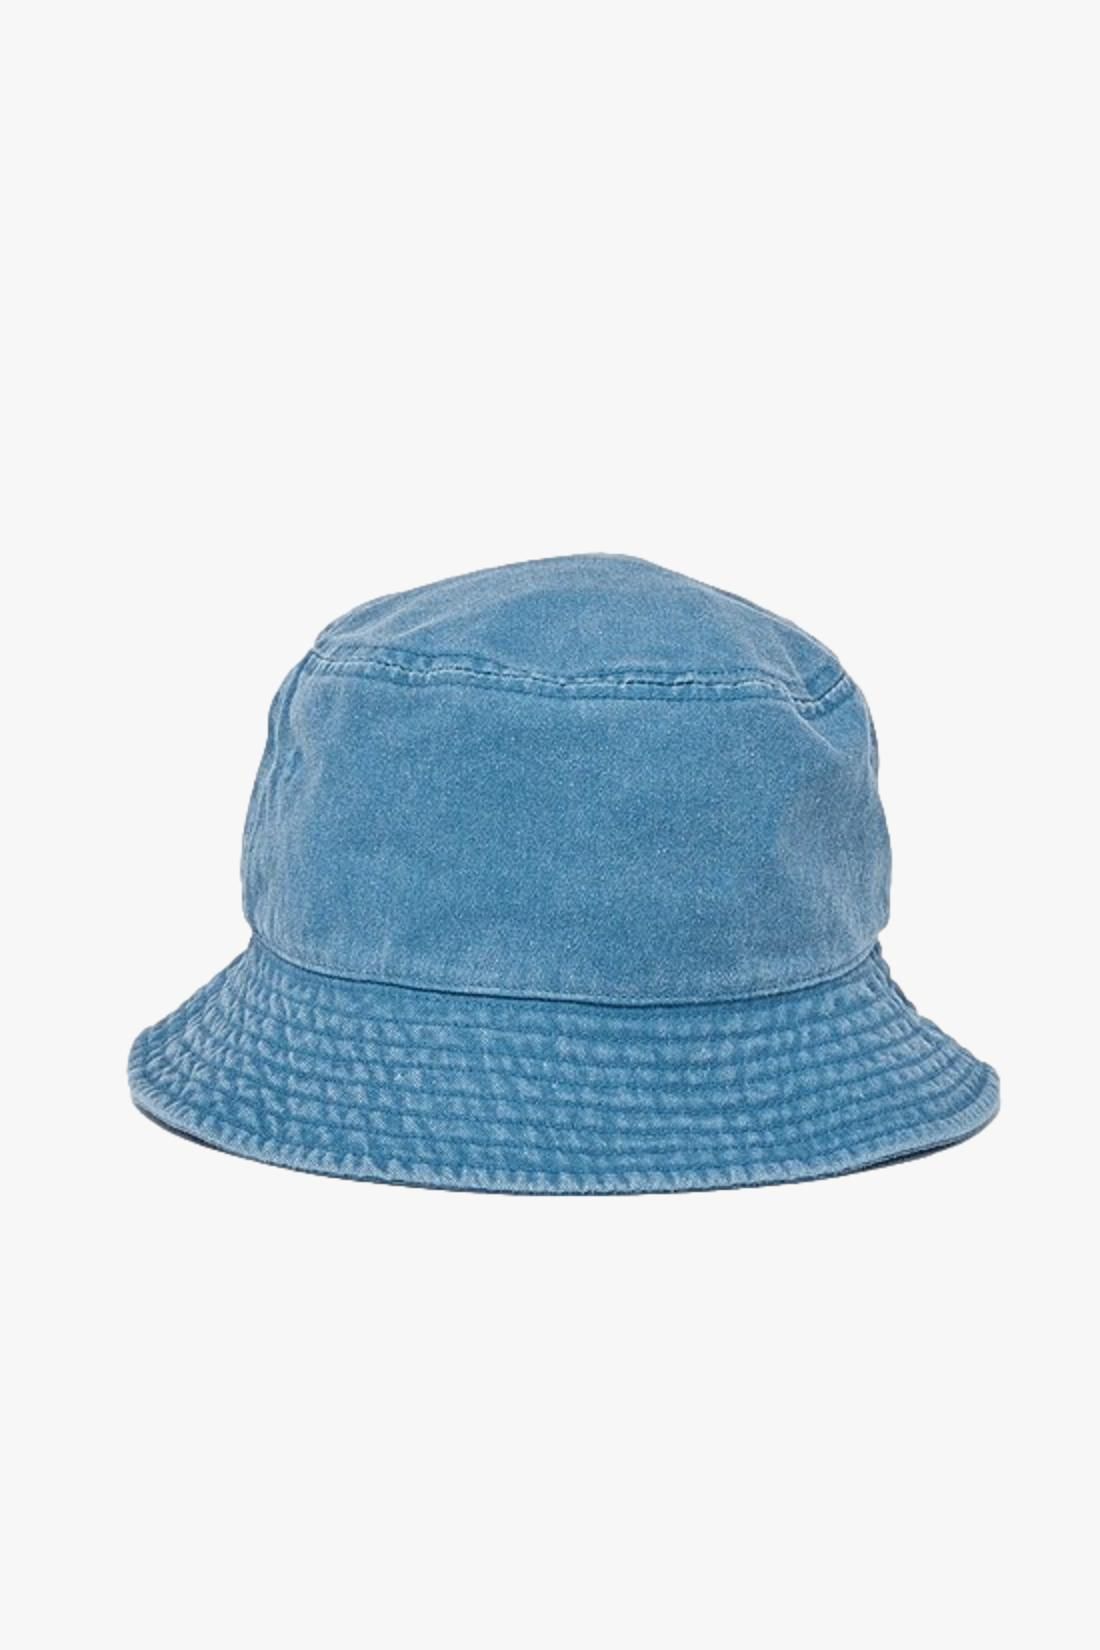 STUSSY / Washed stock bucket hat Laguna blue